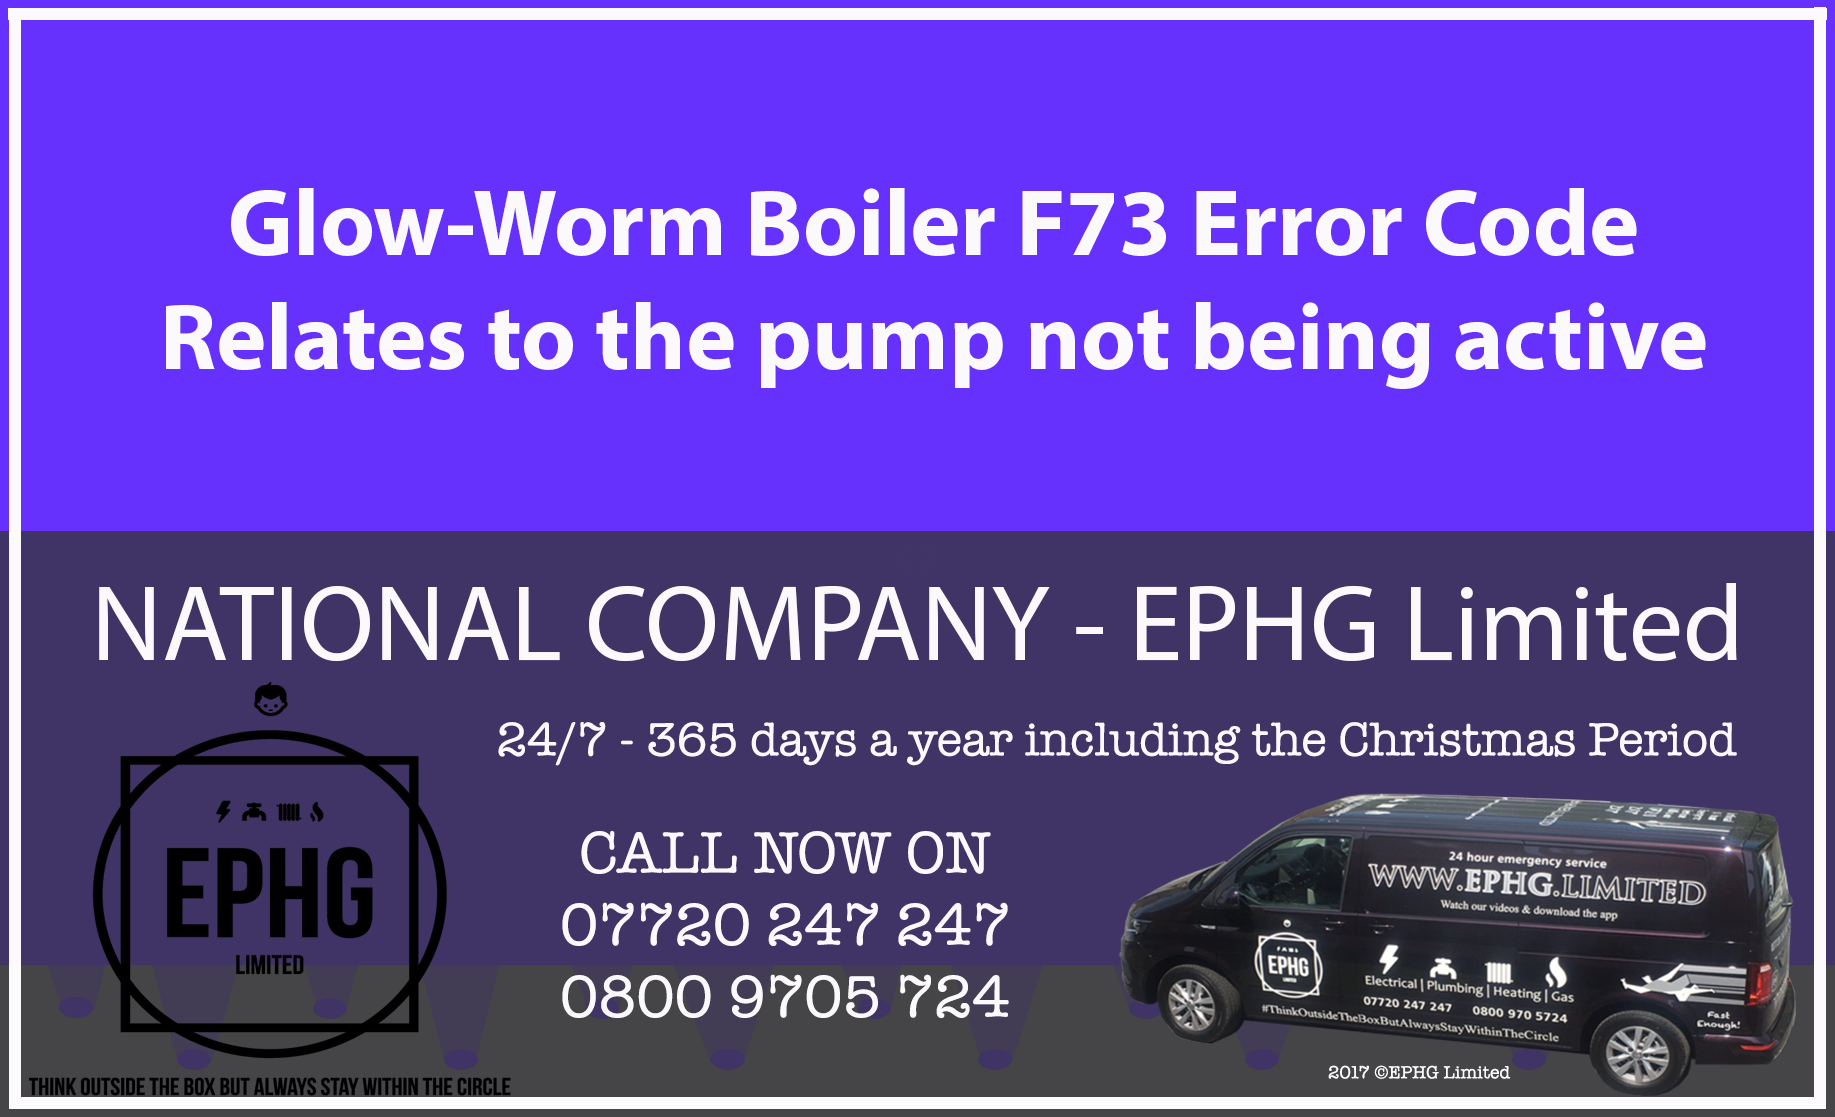 Glow-Worm boiler error code F73